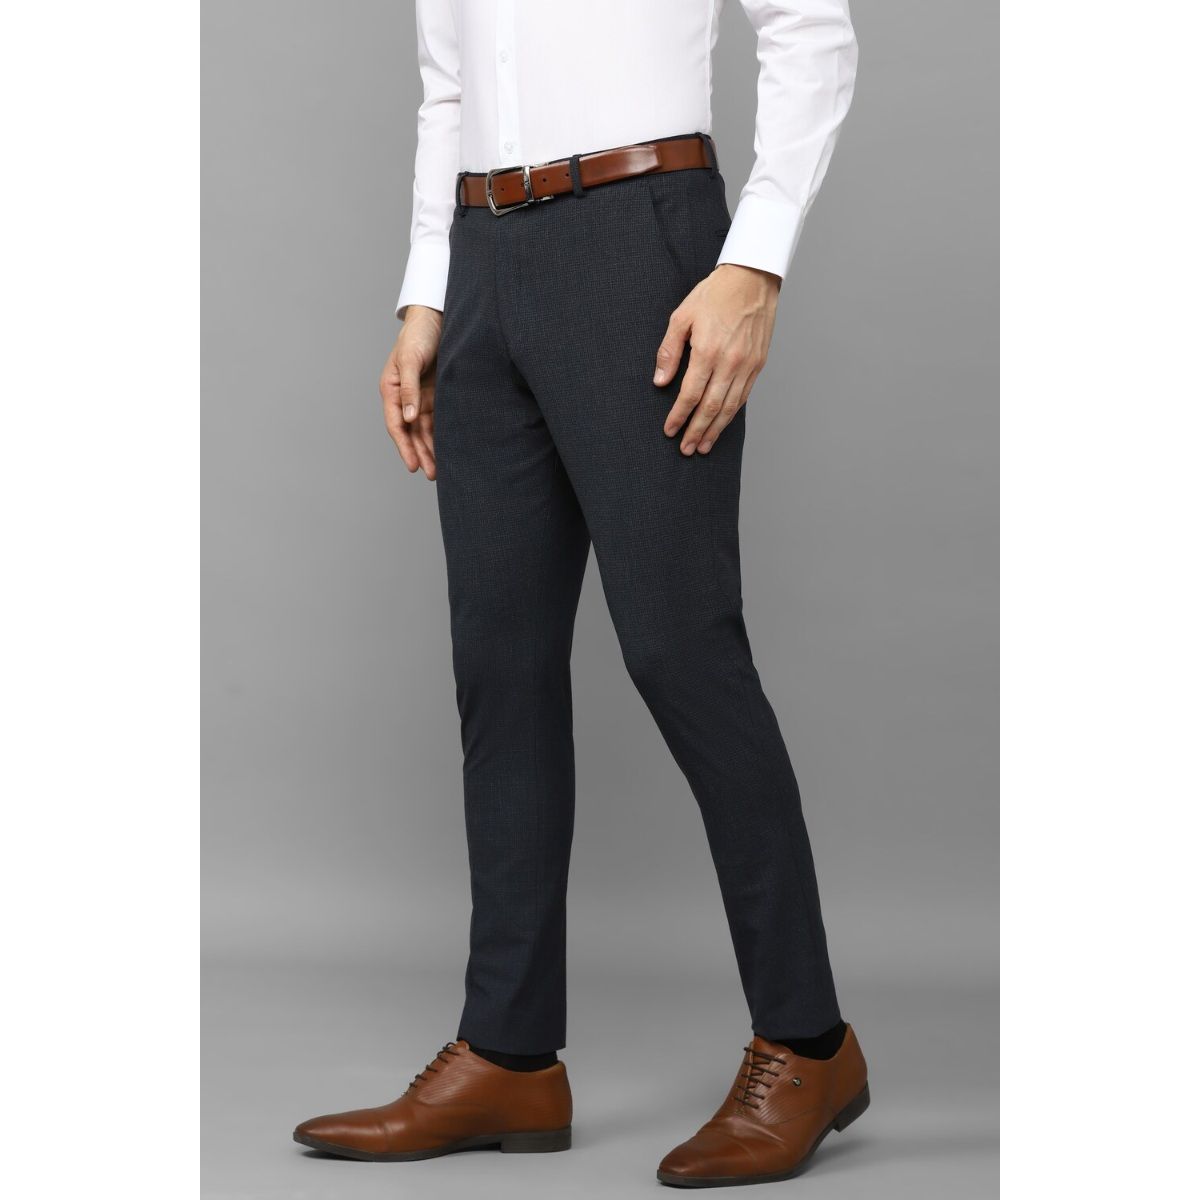 Buy Max Men's Slim Casual Pants (TFCWBSP2302CTGREY_Grey at Amazon.in